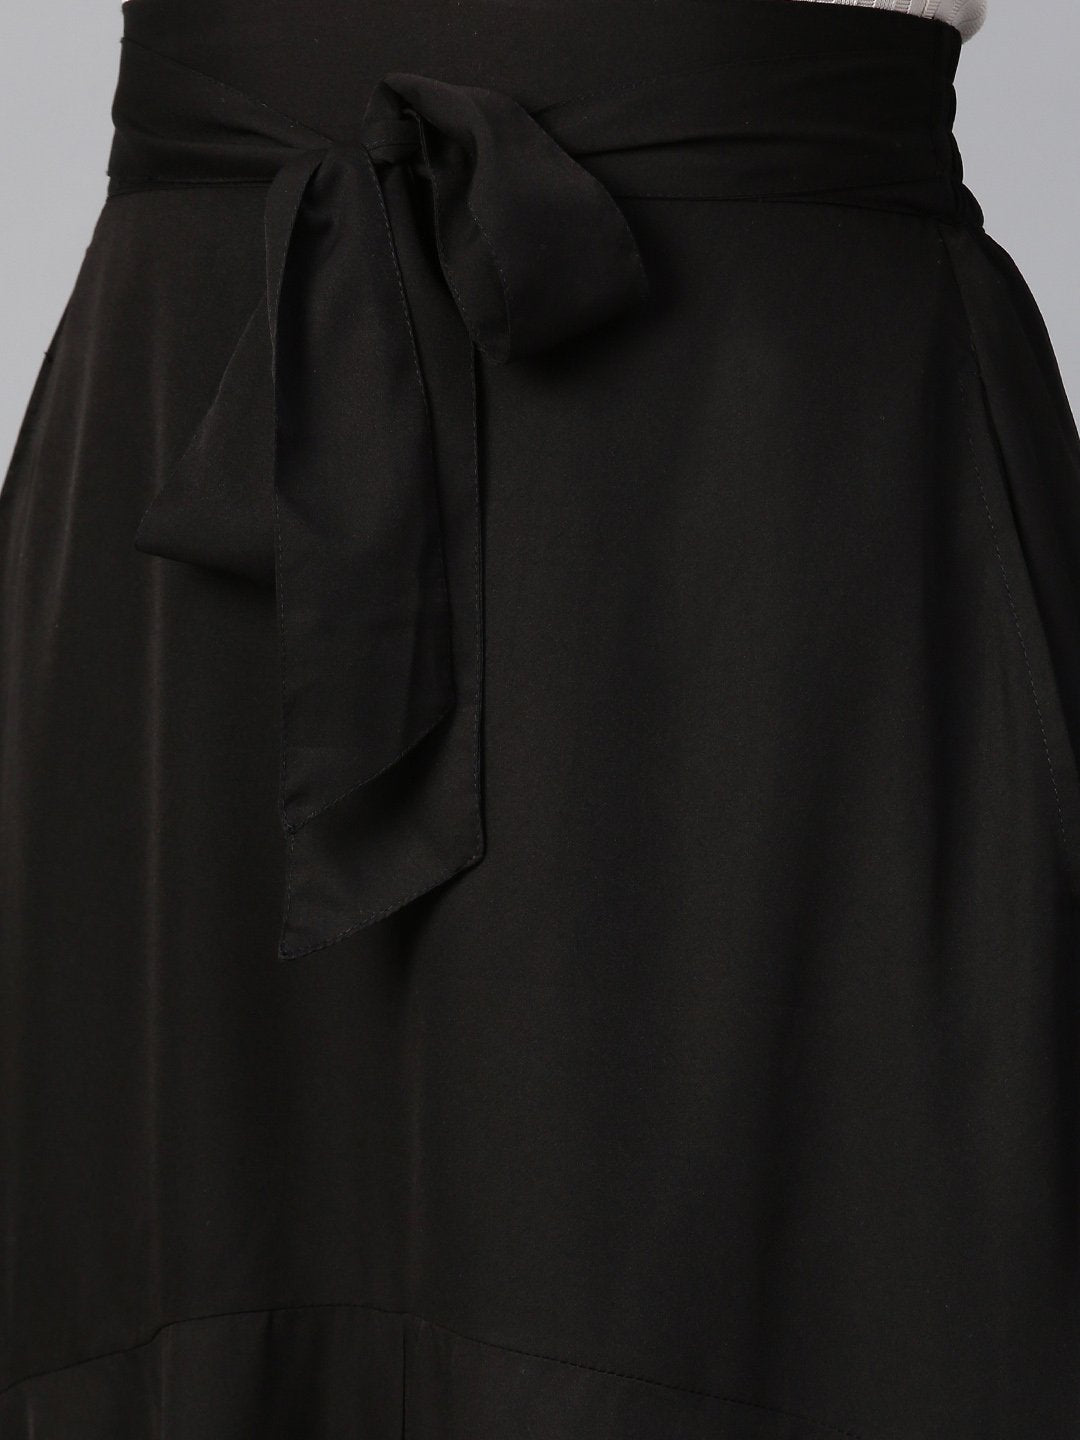 Black Crepe A Line With Front Slit Skirt (Sku- BLMG12815).